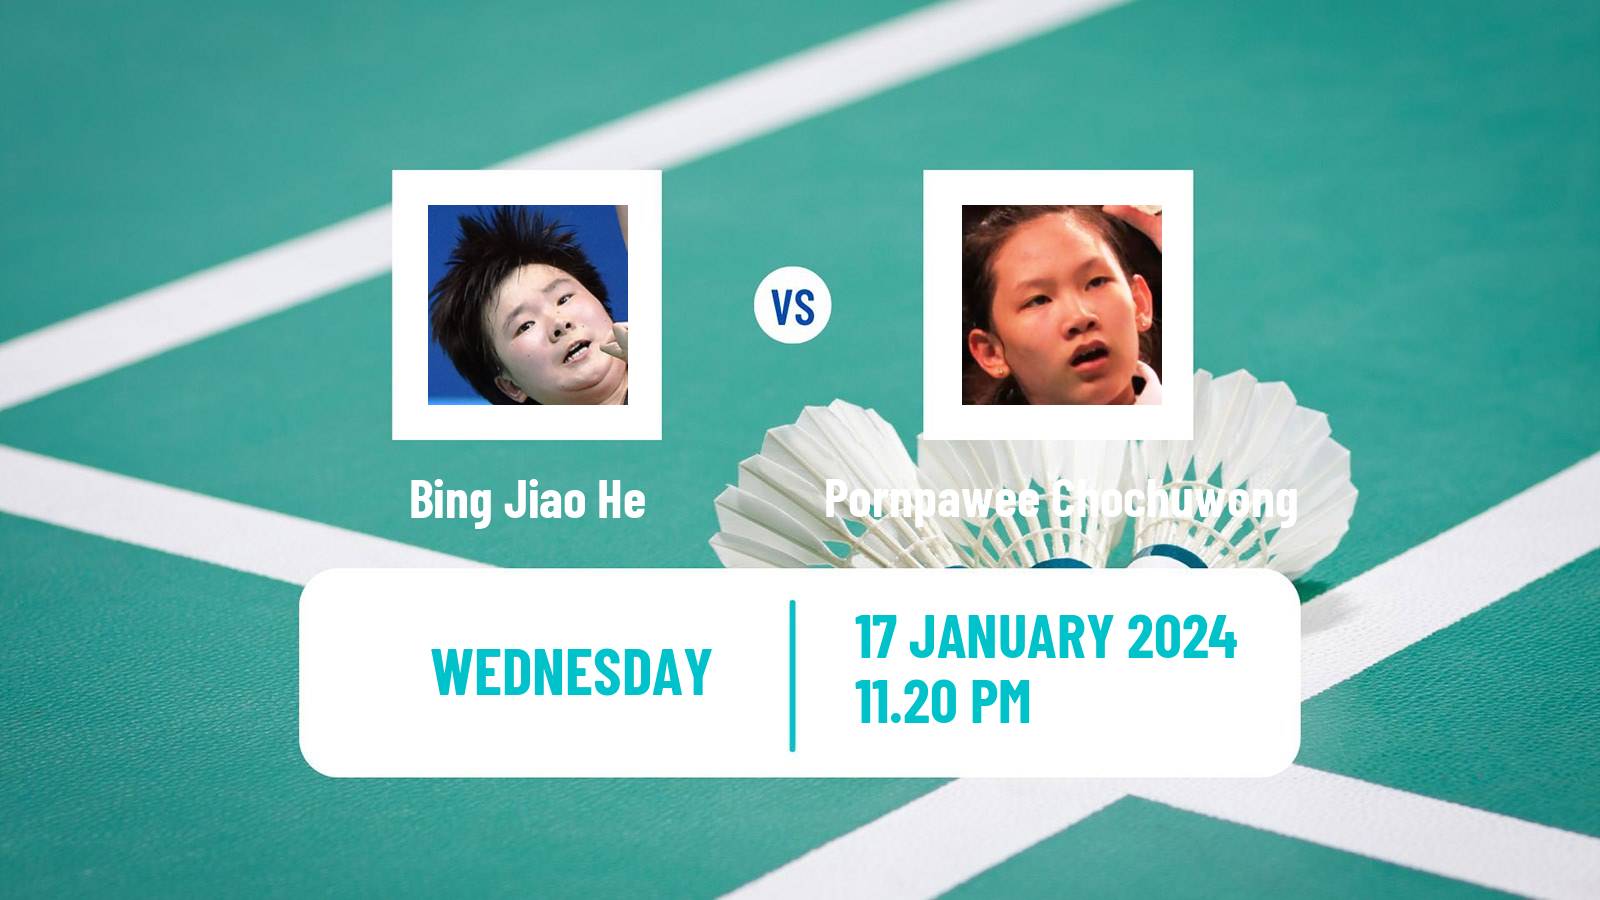 Badminton BWF World Tour India Open Women Bing Jiao He - Pornpawee Chochuwong